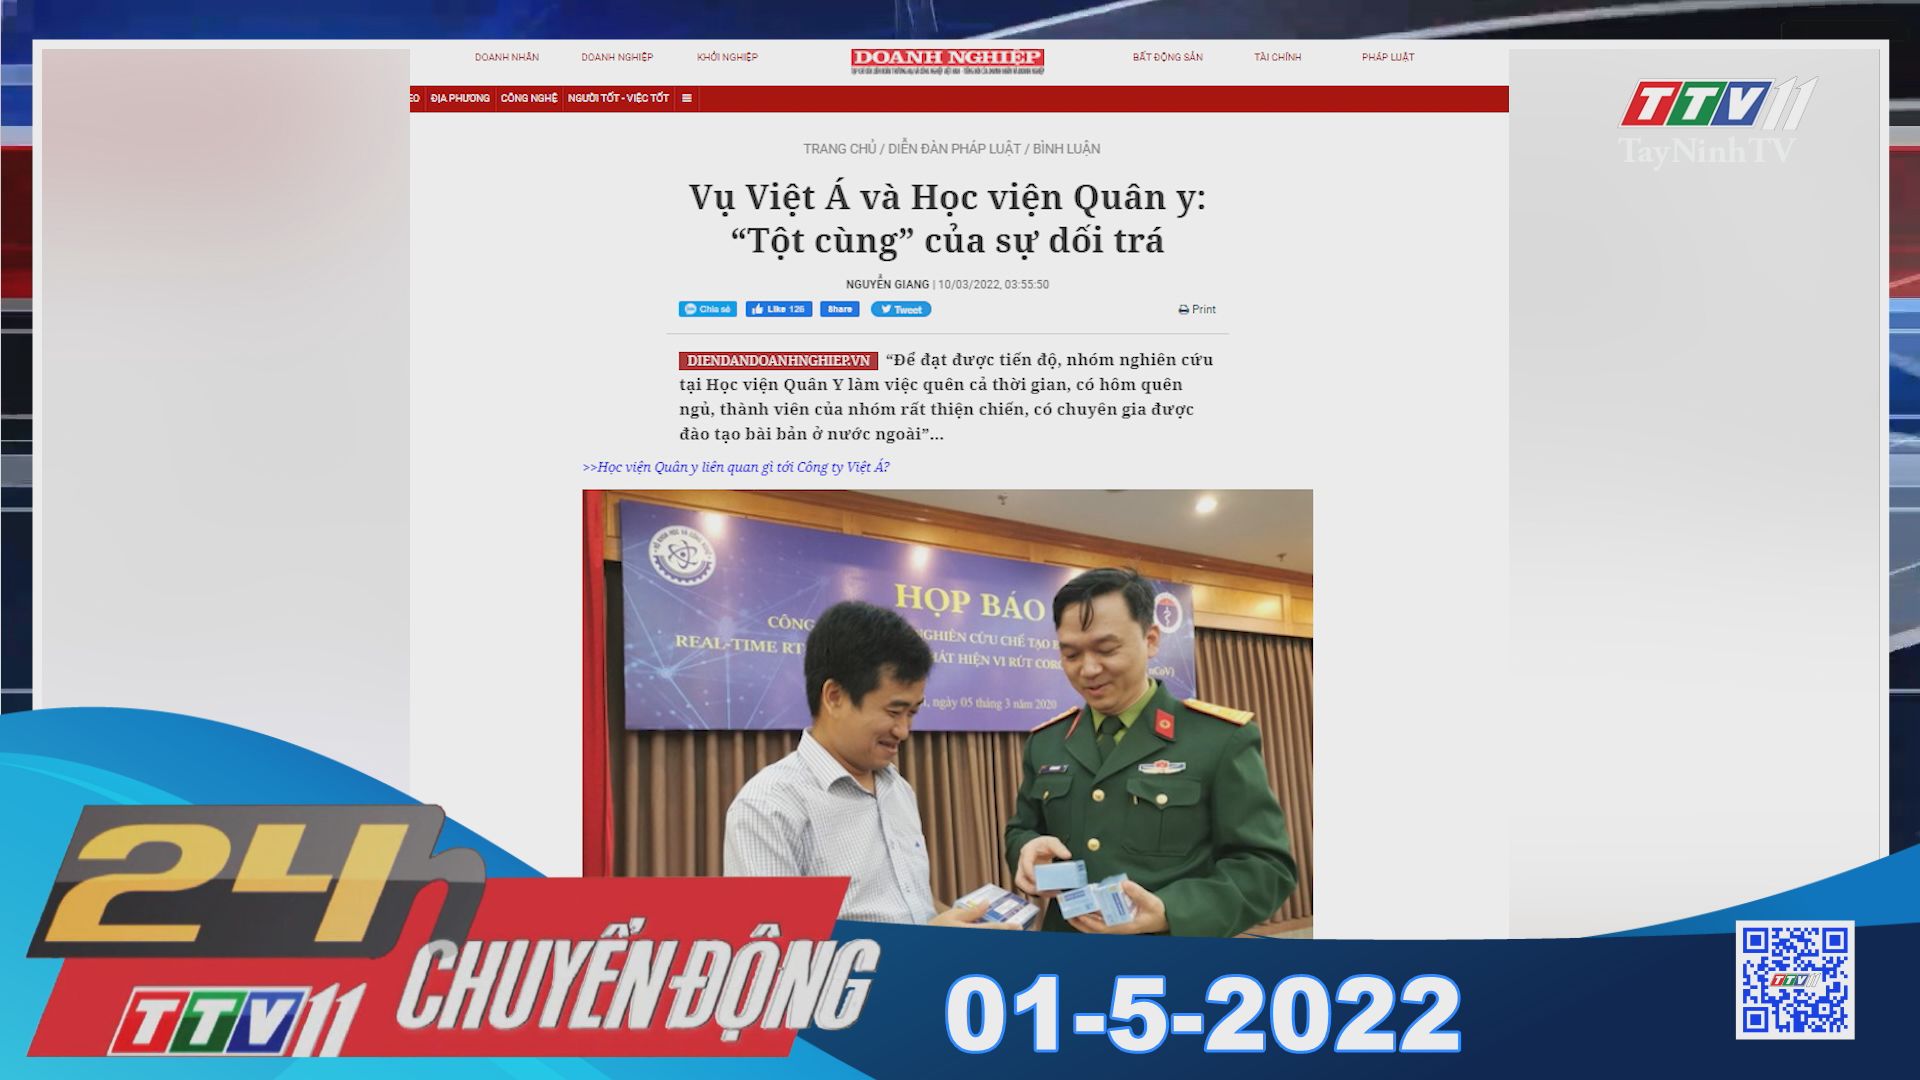 24h Chuyển động 01-5-2022 | Tin tức hôm nay | TayNinhTV